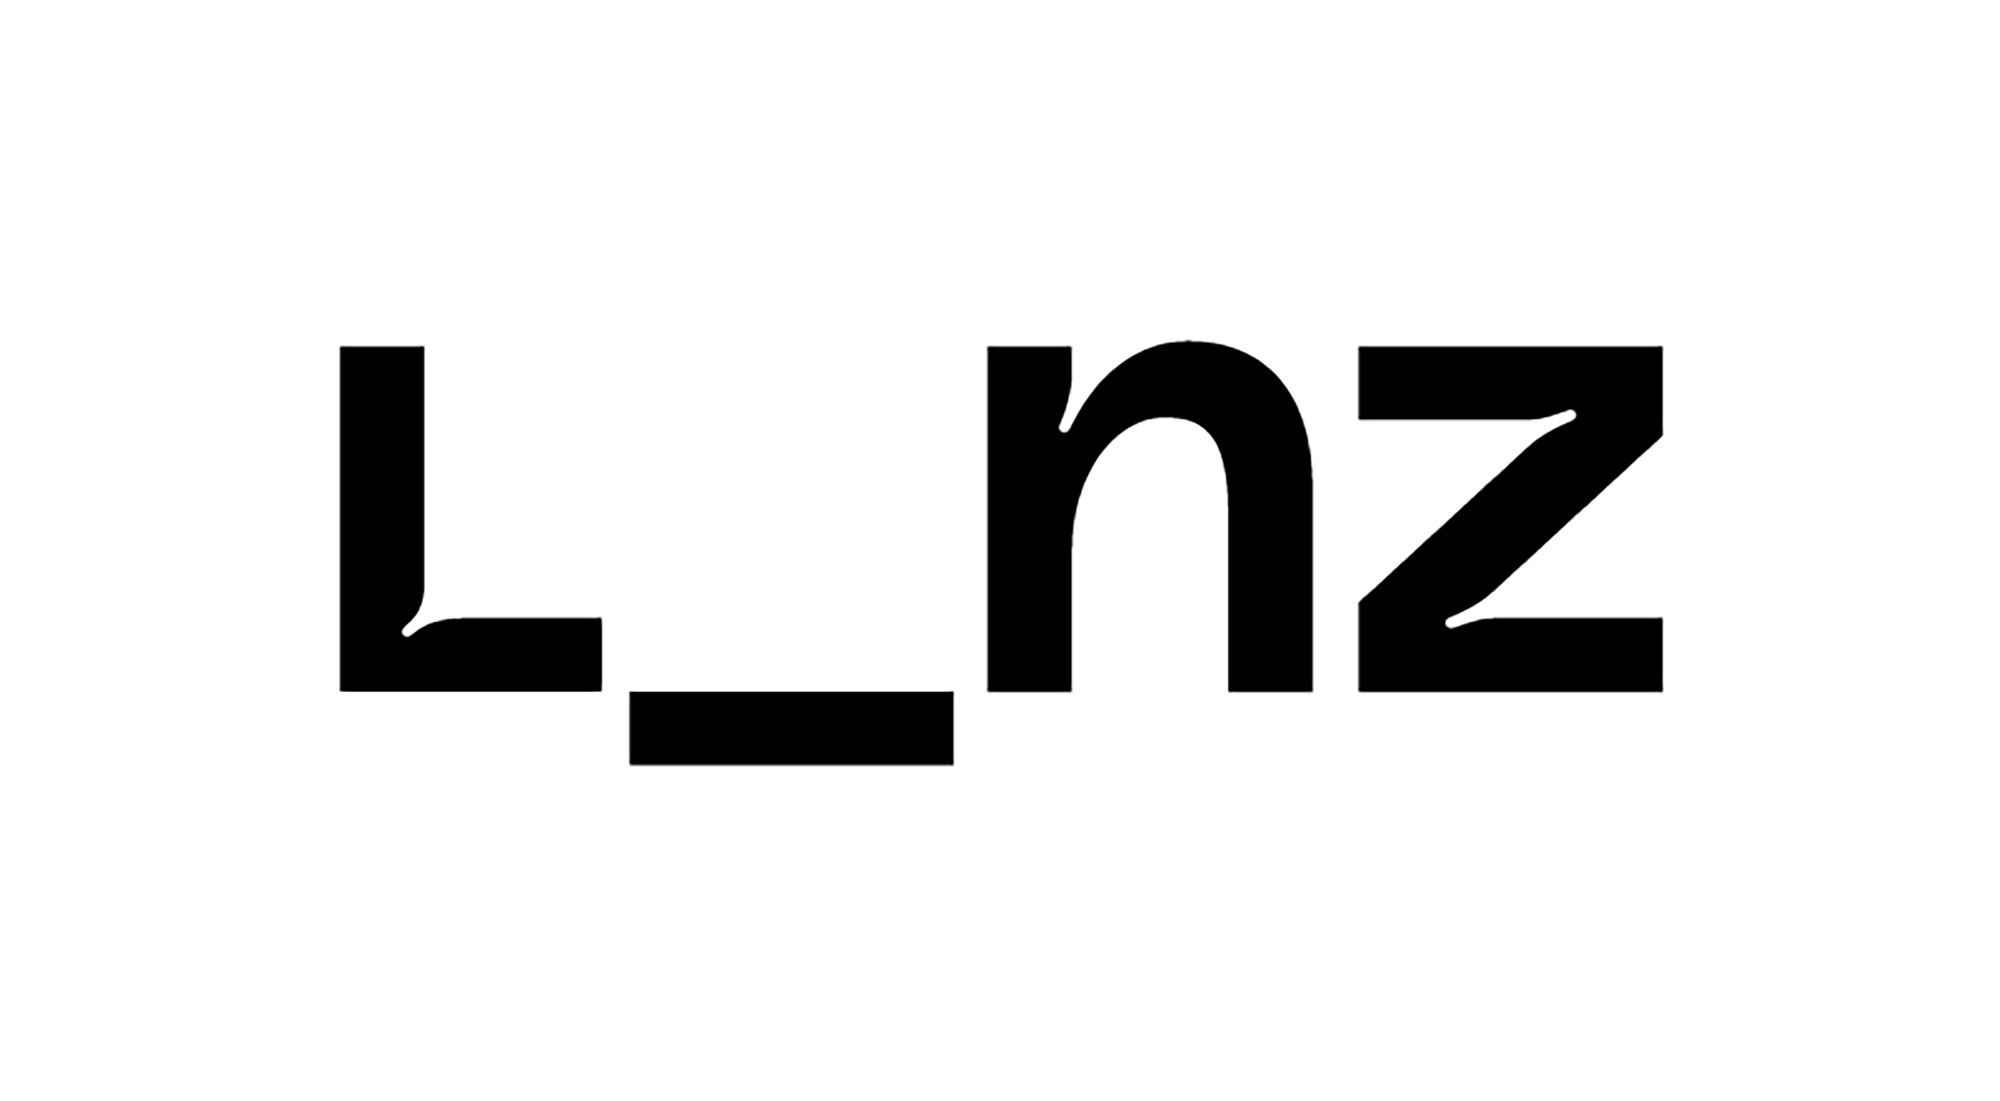 In schwarzer Schrift ist das Wort "L_nz" geschrieben.